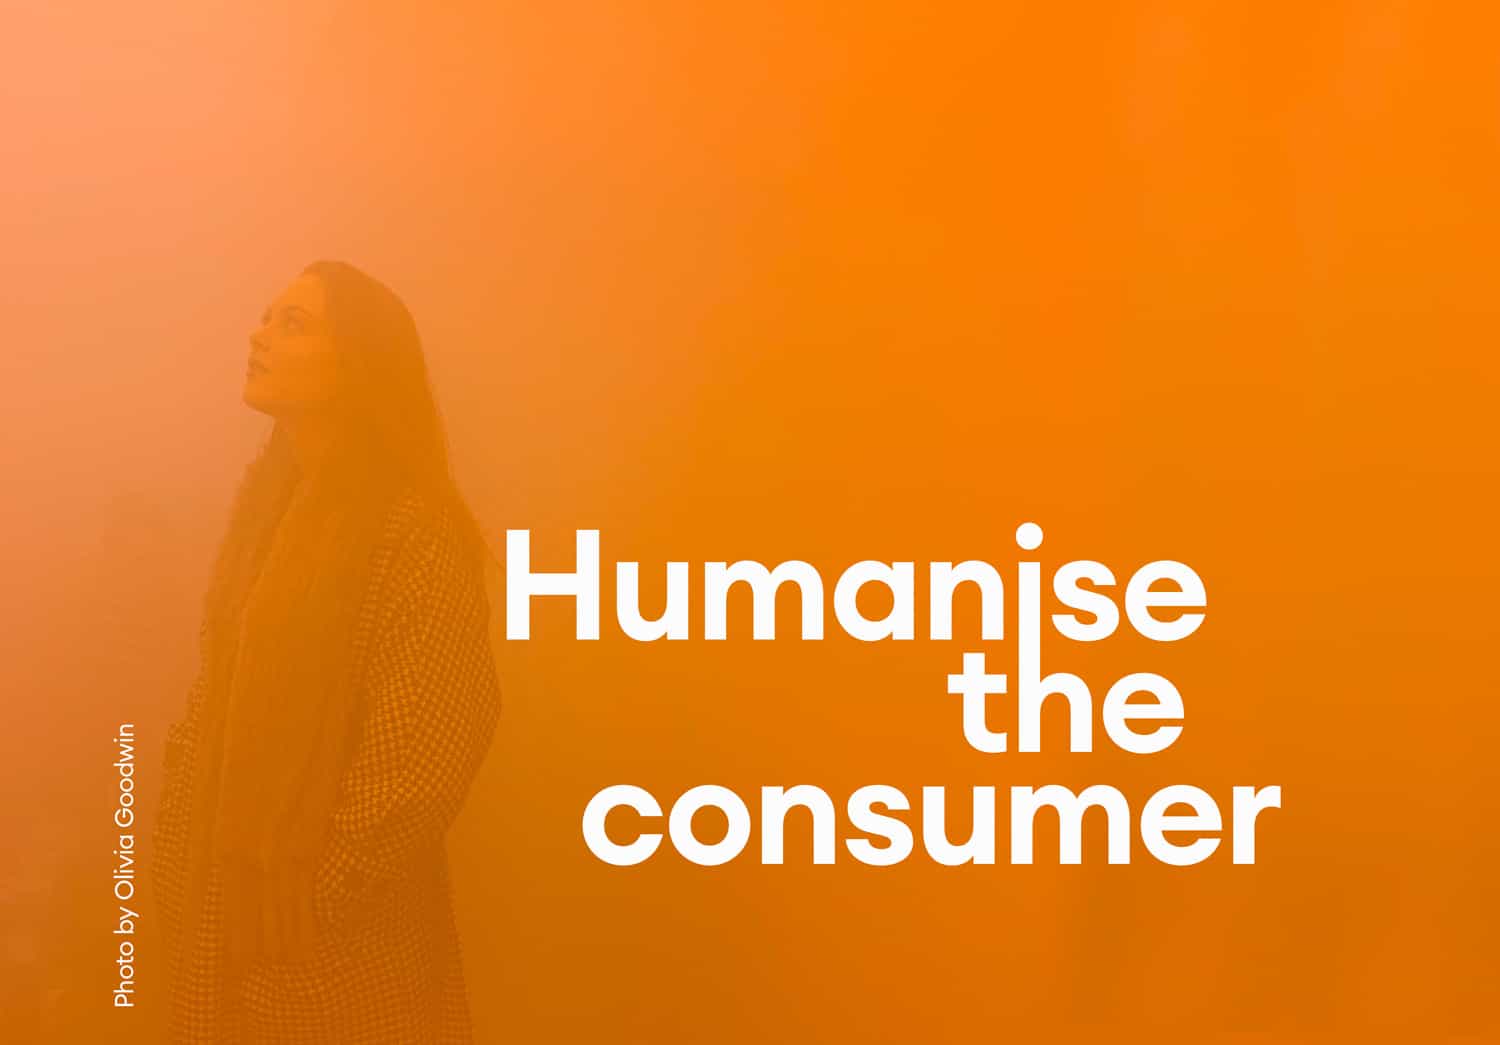 Humanise the consumer hero image